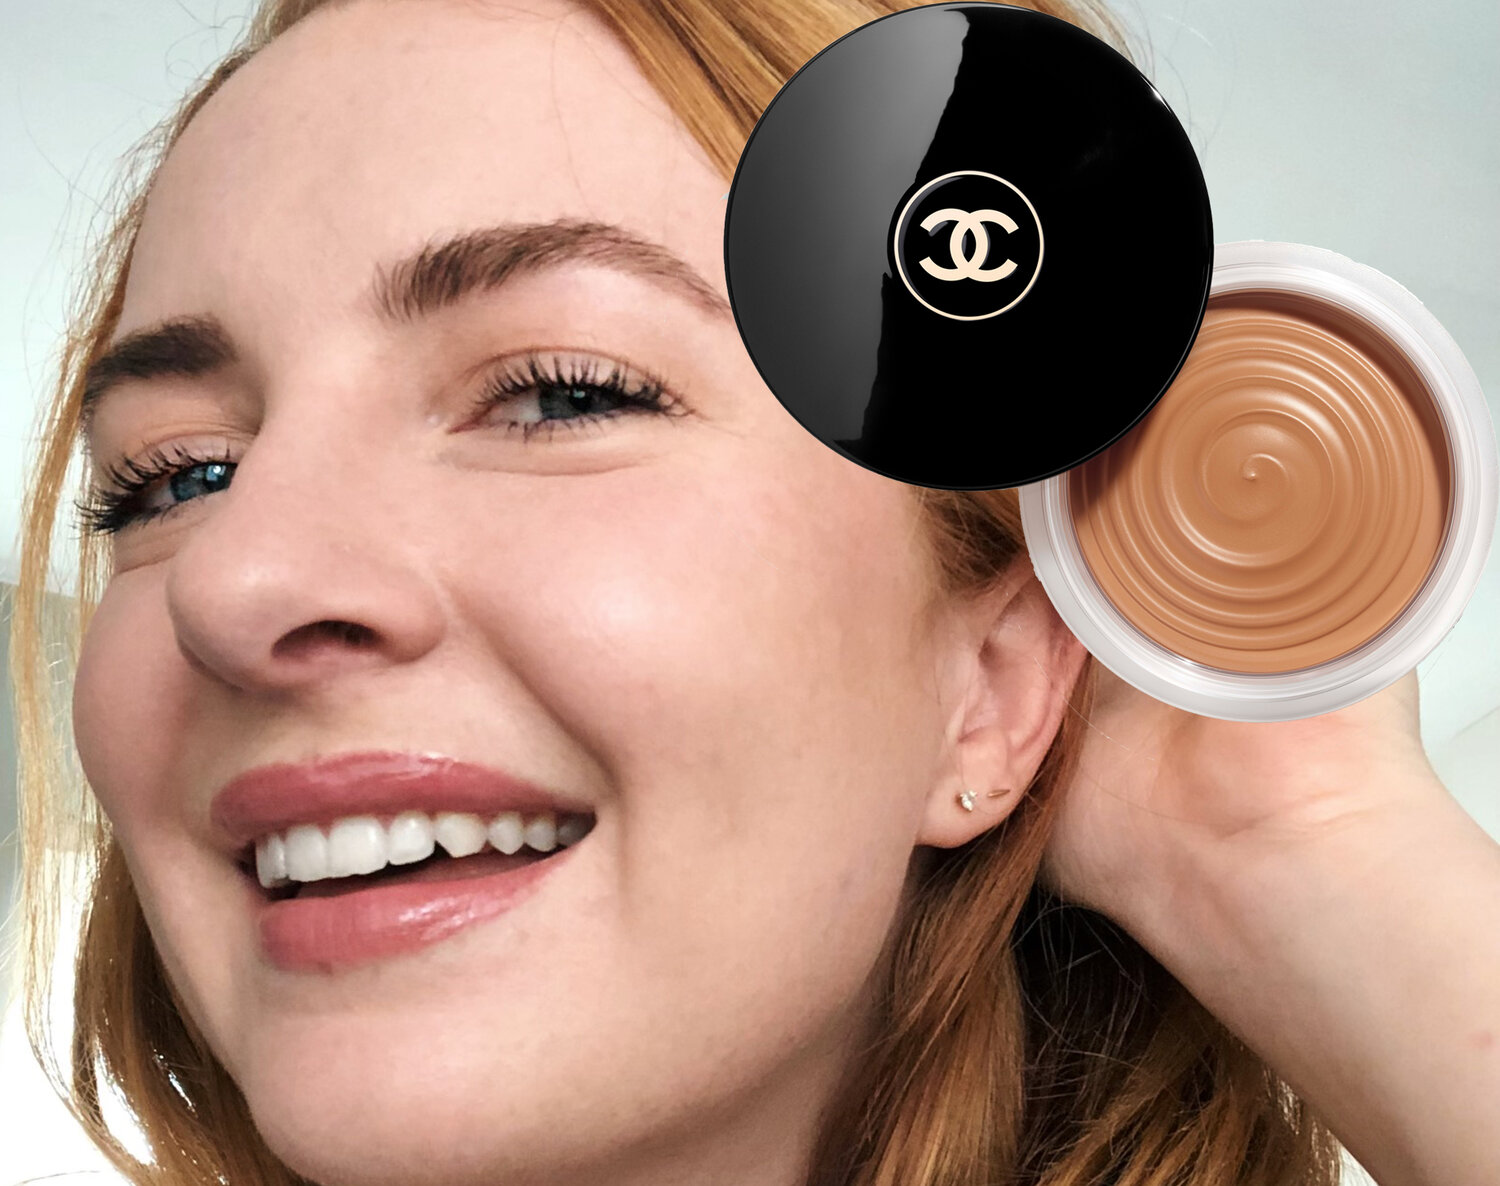  Chanel Soleil Tan De Chanel Bronzing Makeup Base 1 oz/ 30 g :  Foundation Makeup : Beauty & Personal Care